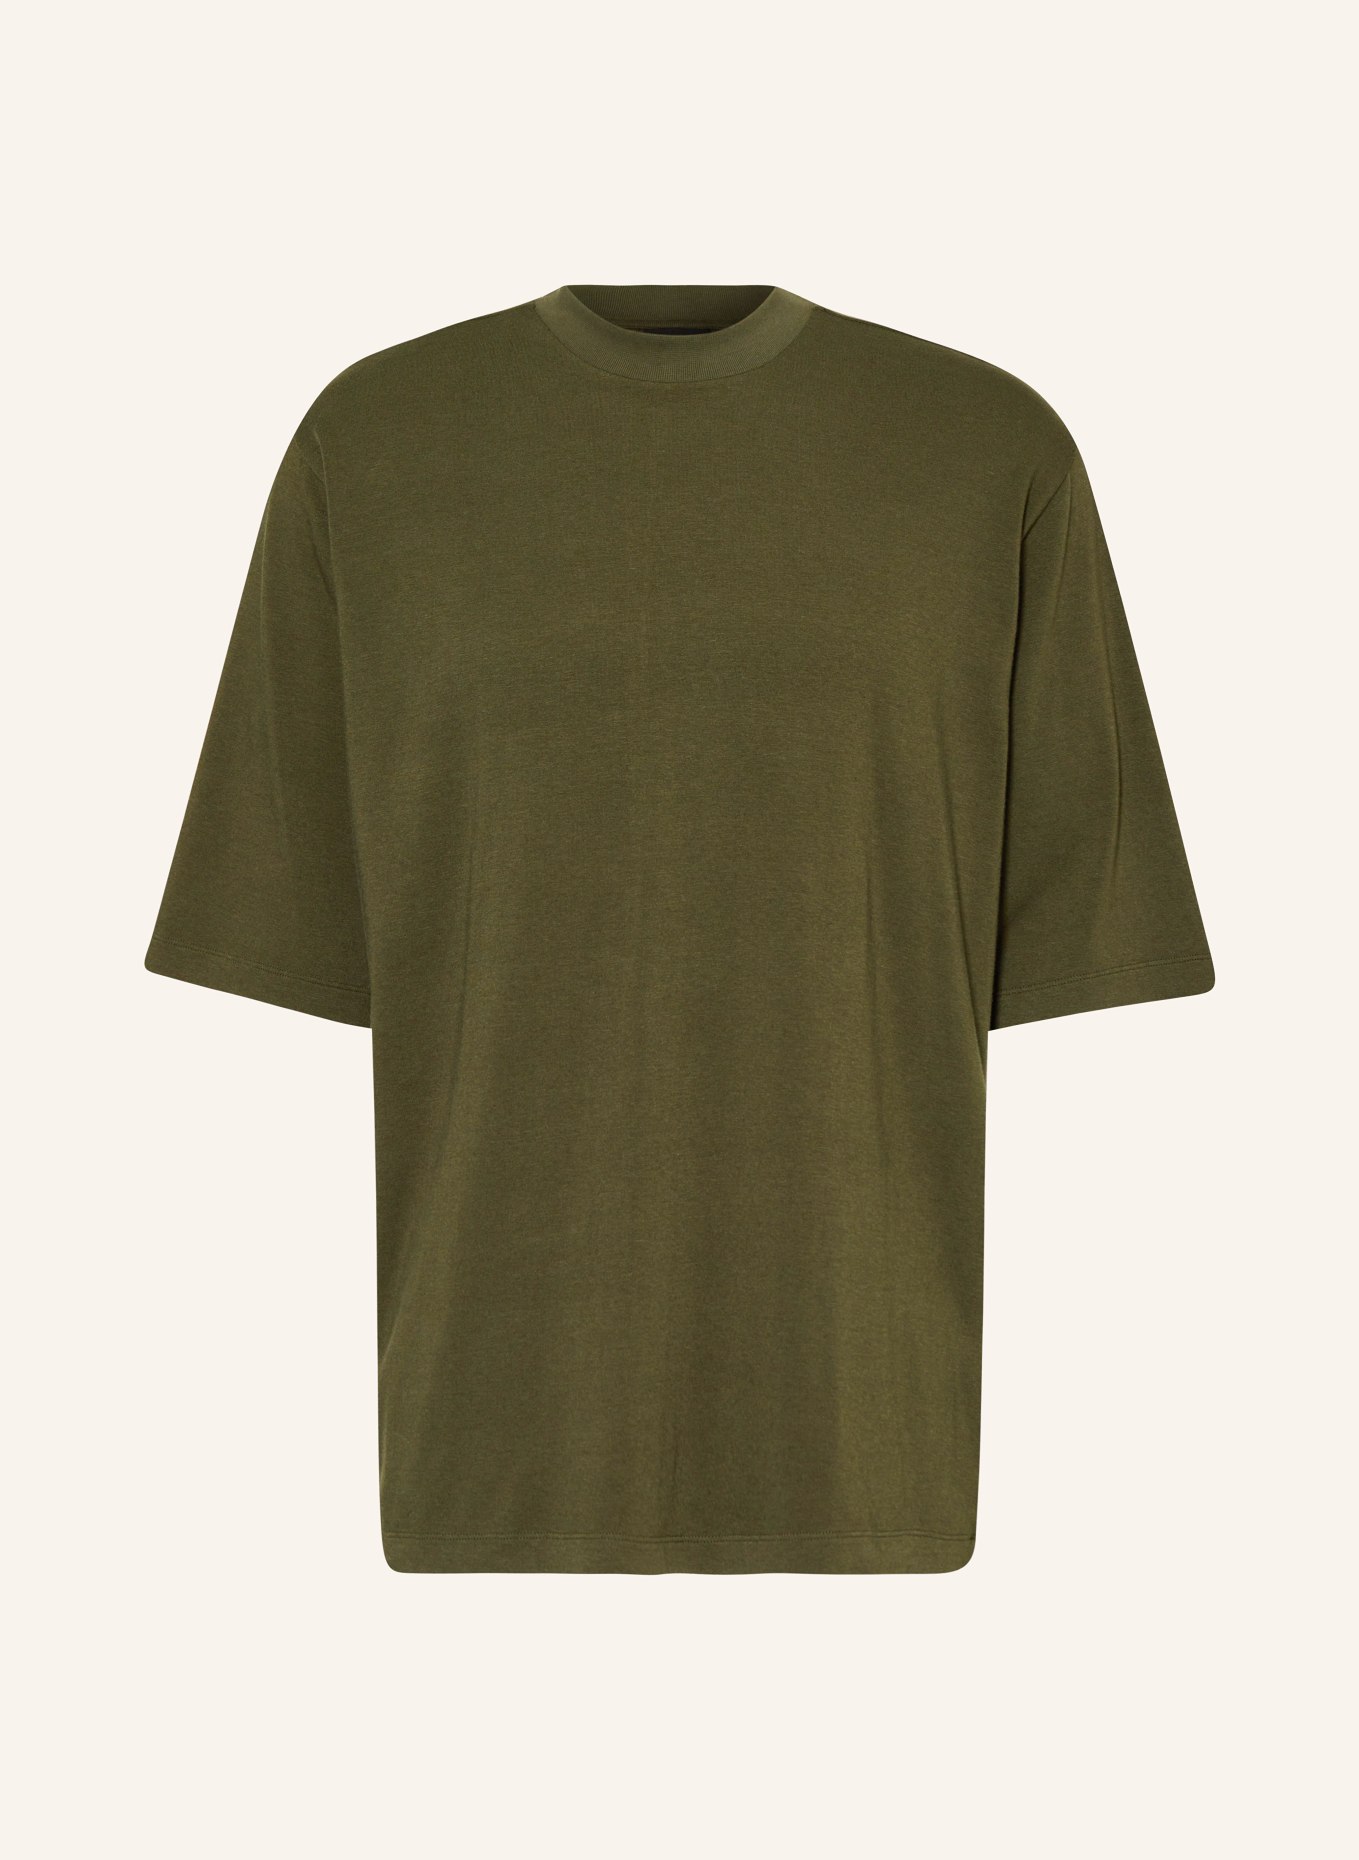 thom/krom Oversized shirt, Color: KHAKI (Image 1)